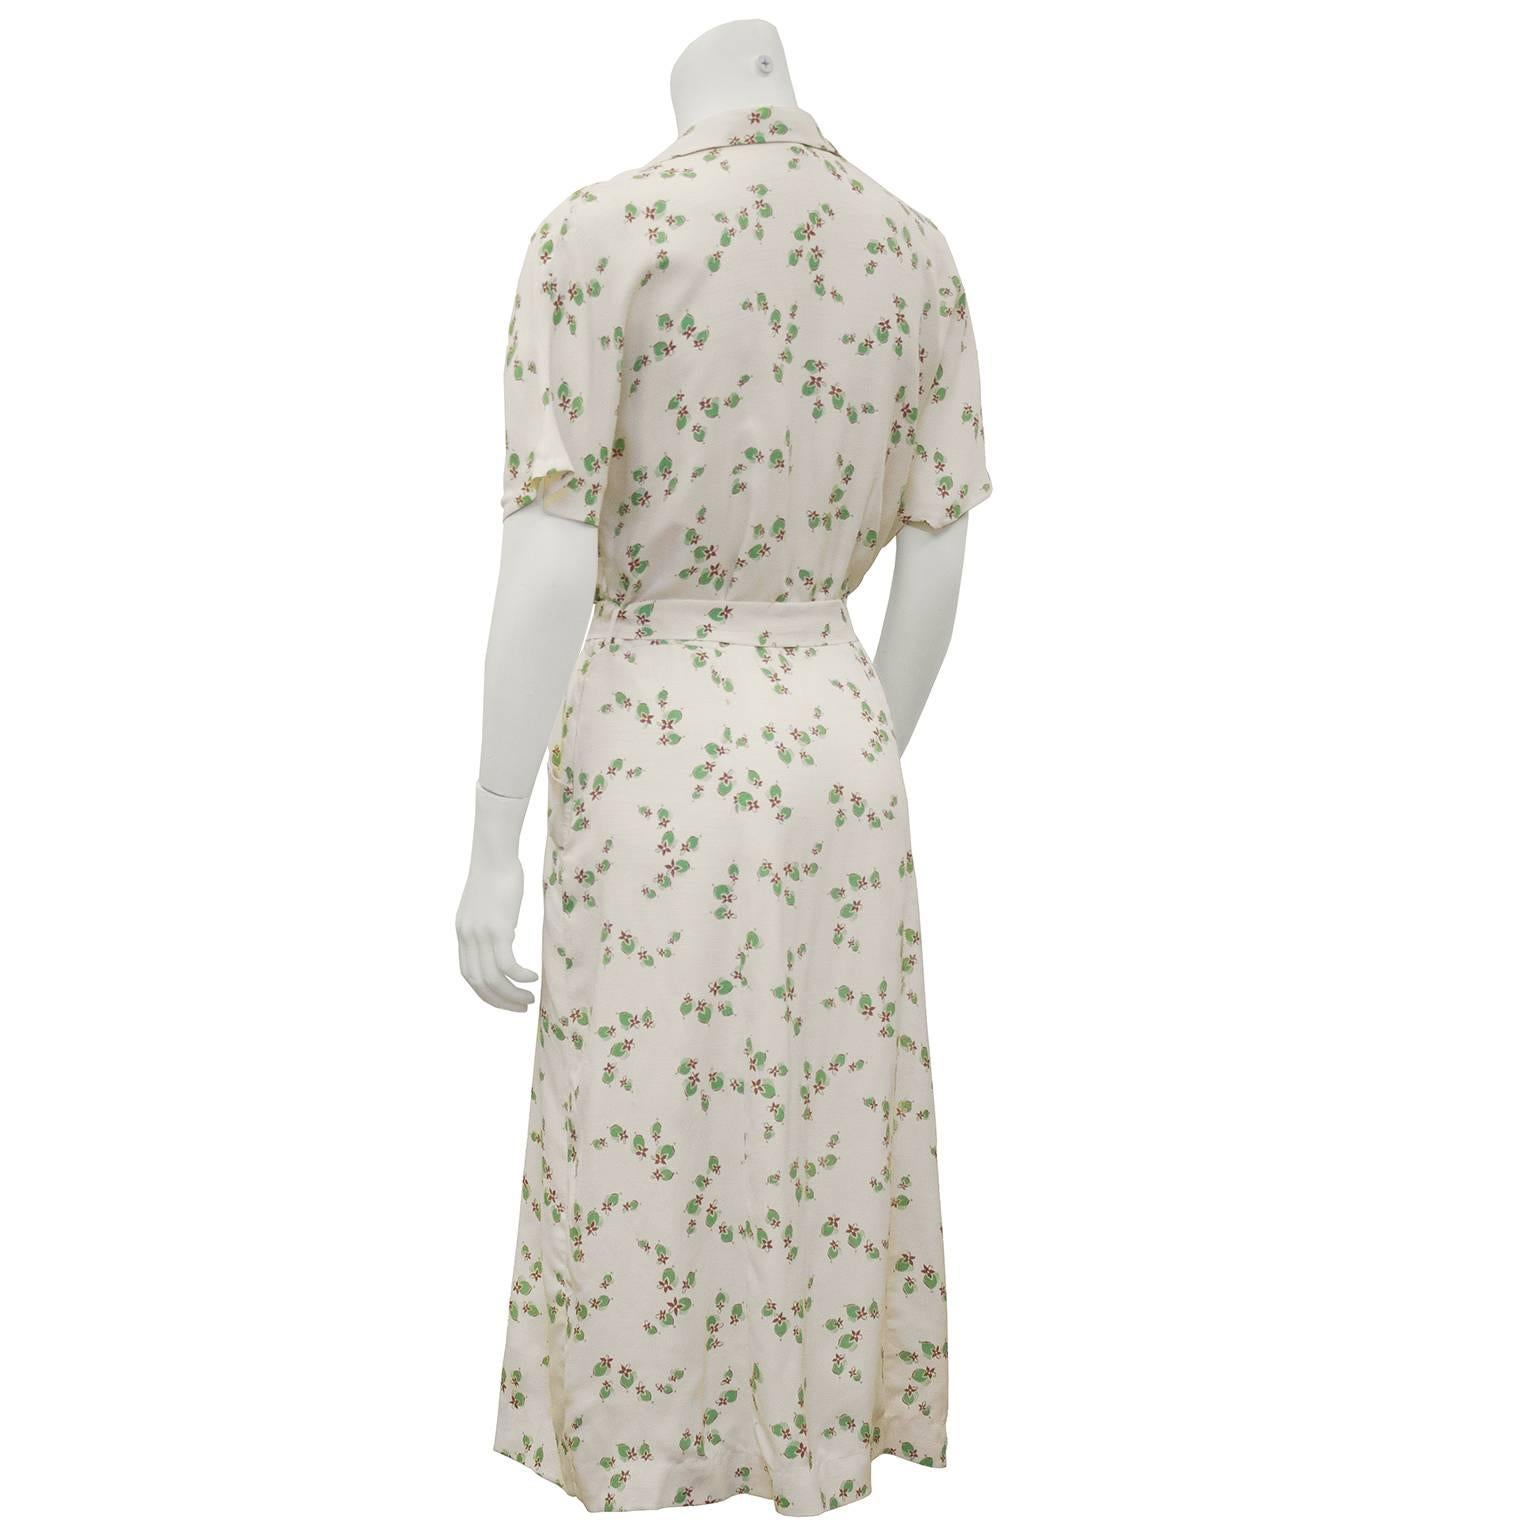 shirtwaist dress 1940s